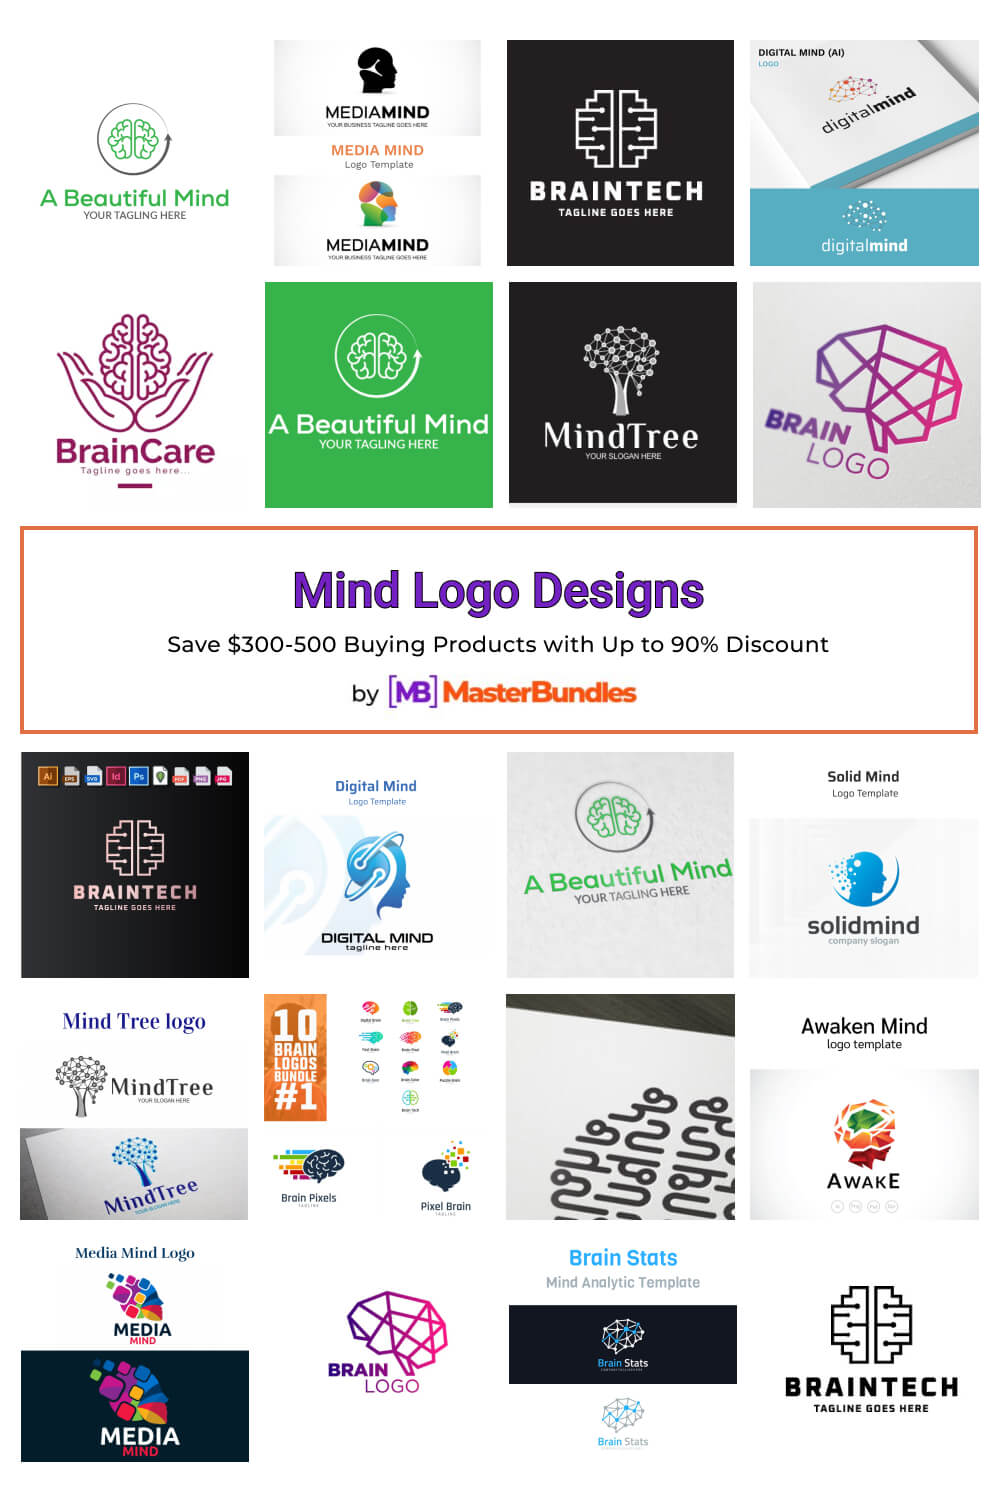 mind logo designs pinterest image.